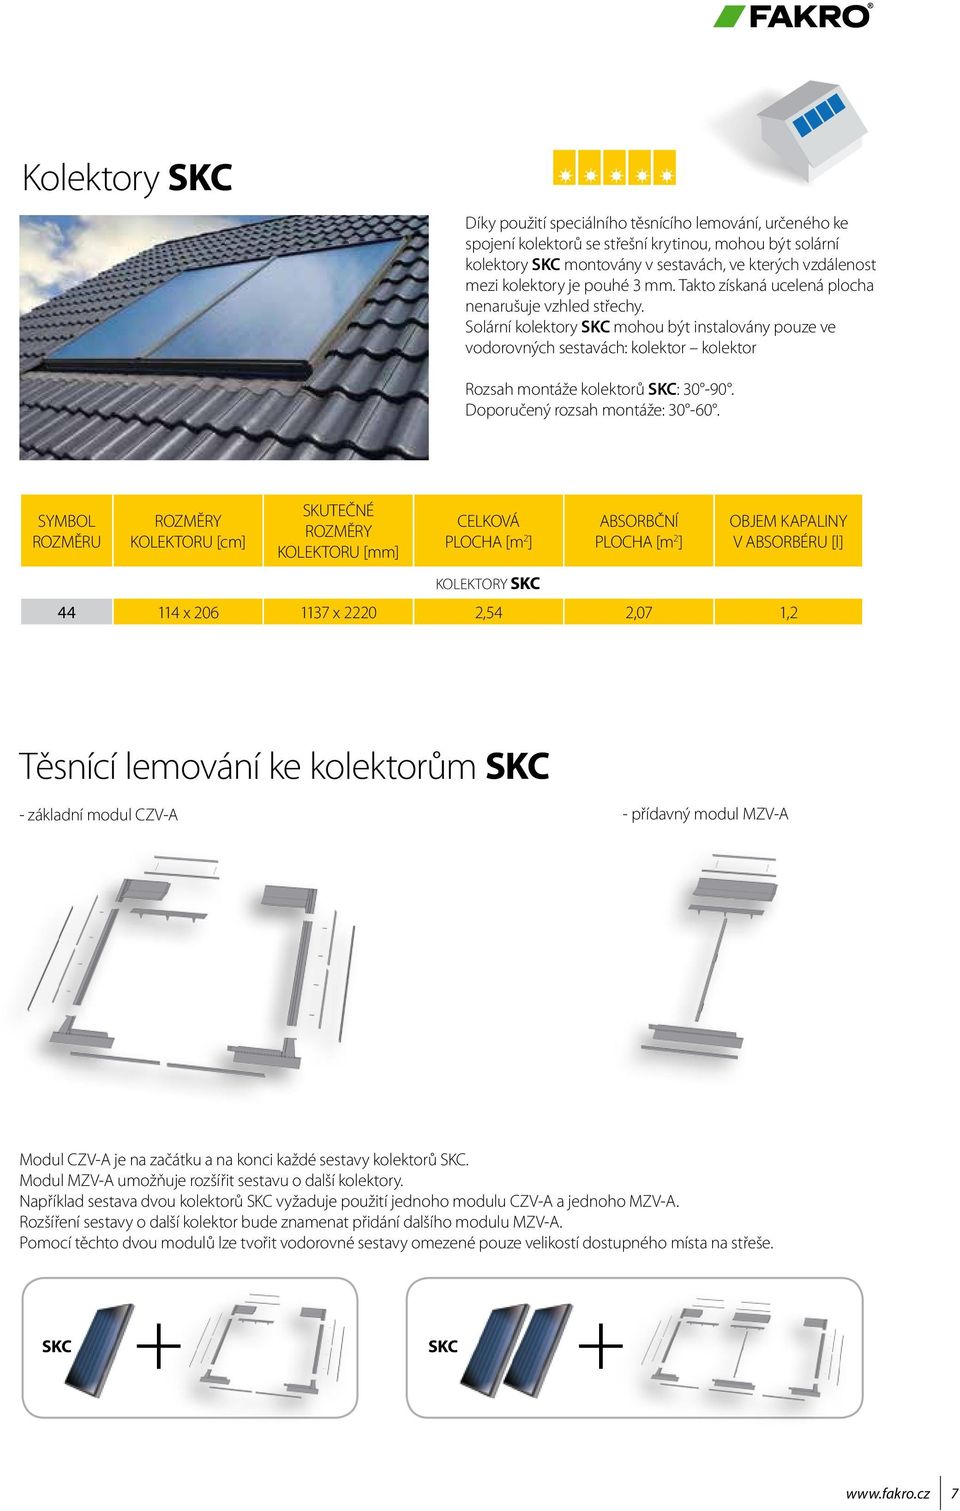 Solární kolektory SKC mohou být instalovány pouze ve vodorovných sestavách: kolektor kolektor Rozsah montáže kolektorů SKC: 30-90. Doporučený rozsah montáže: 30-60.